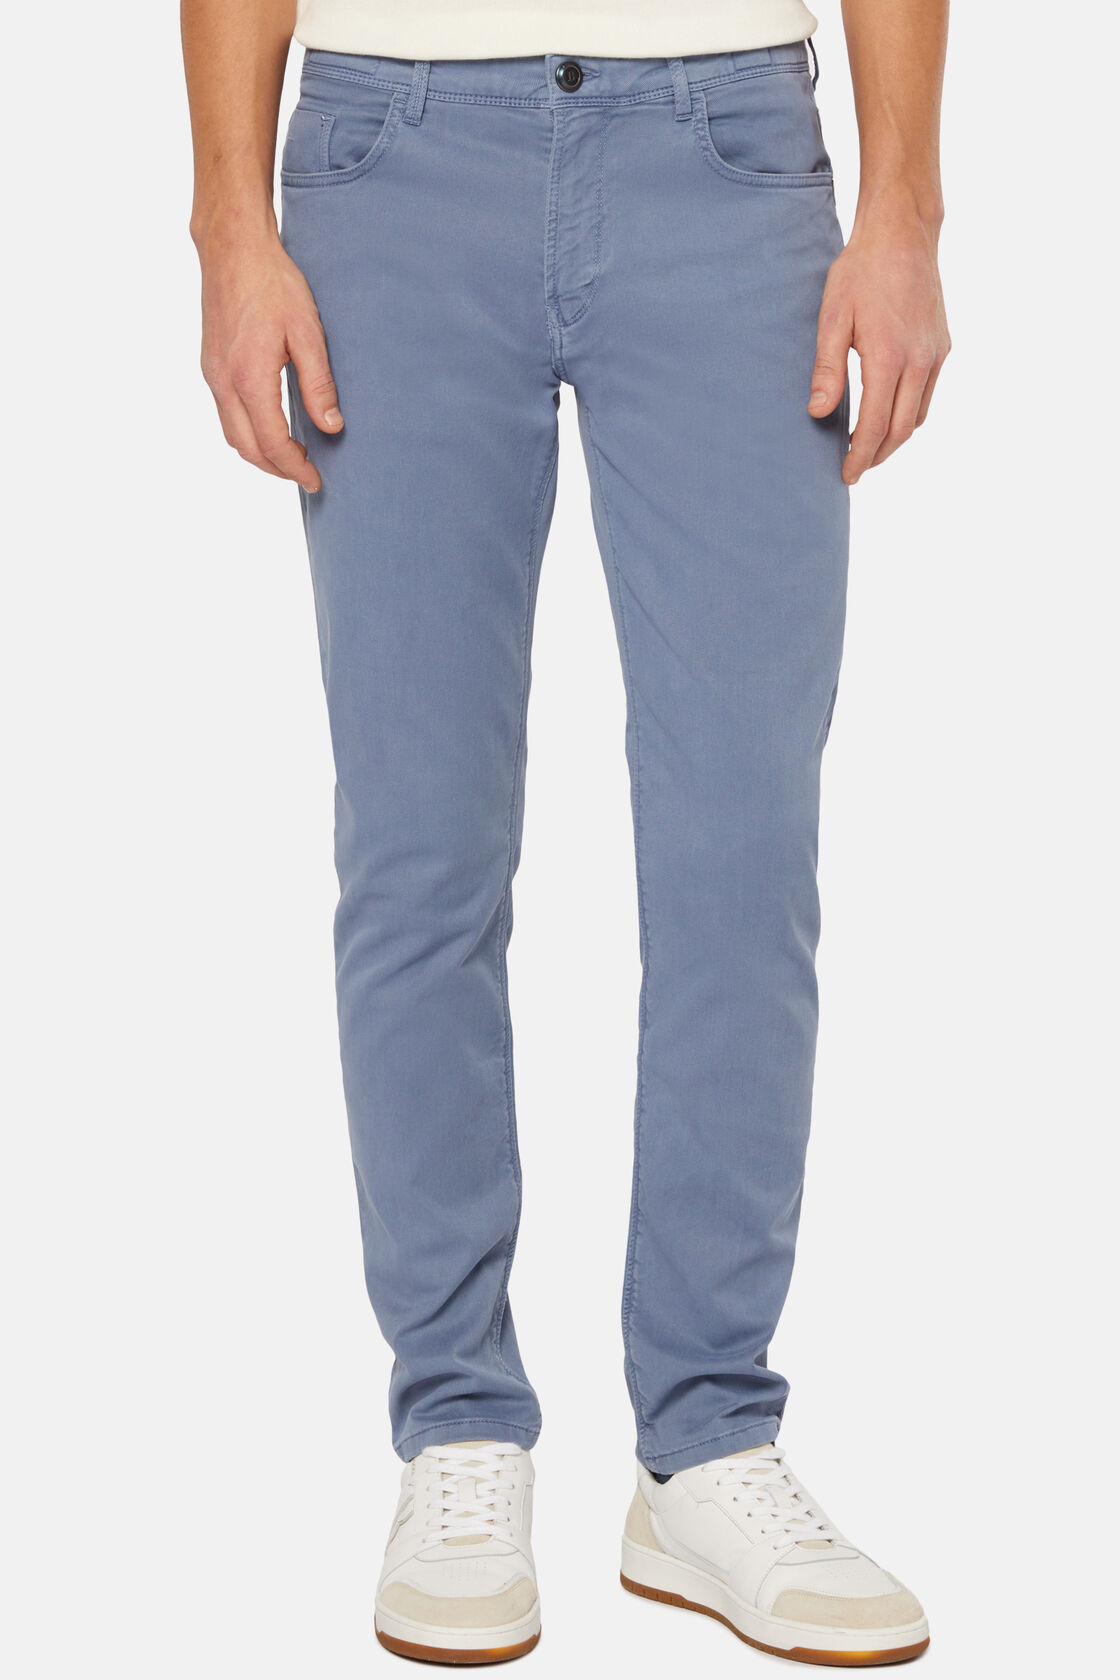 Stretch Cotton/Tencel Jeans, Air-blue, hi-res